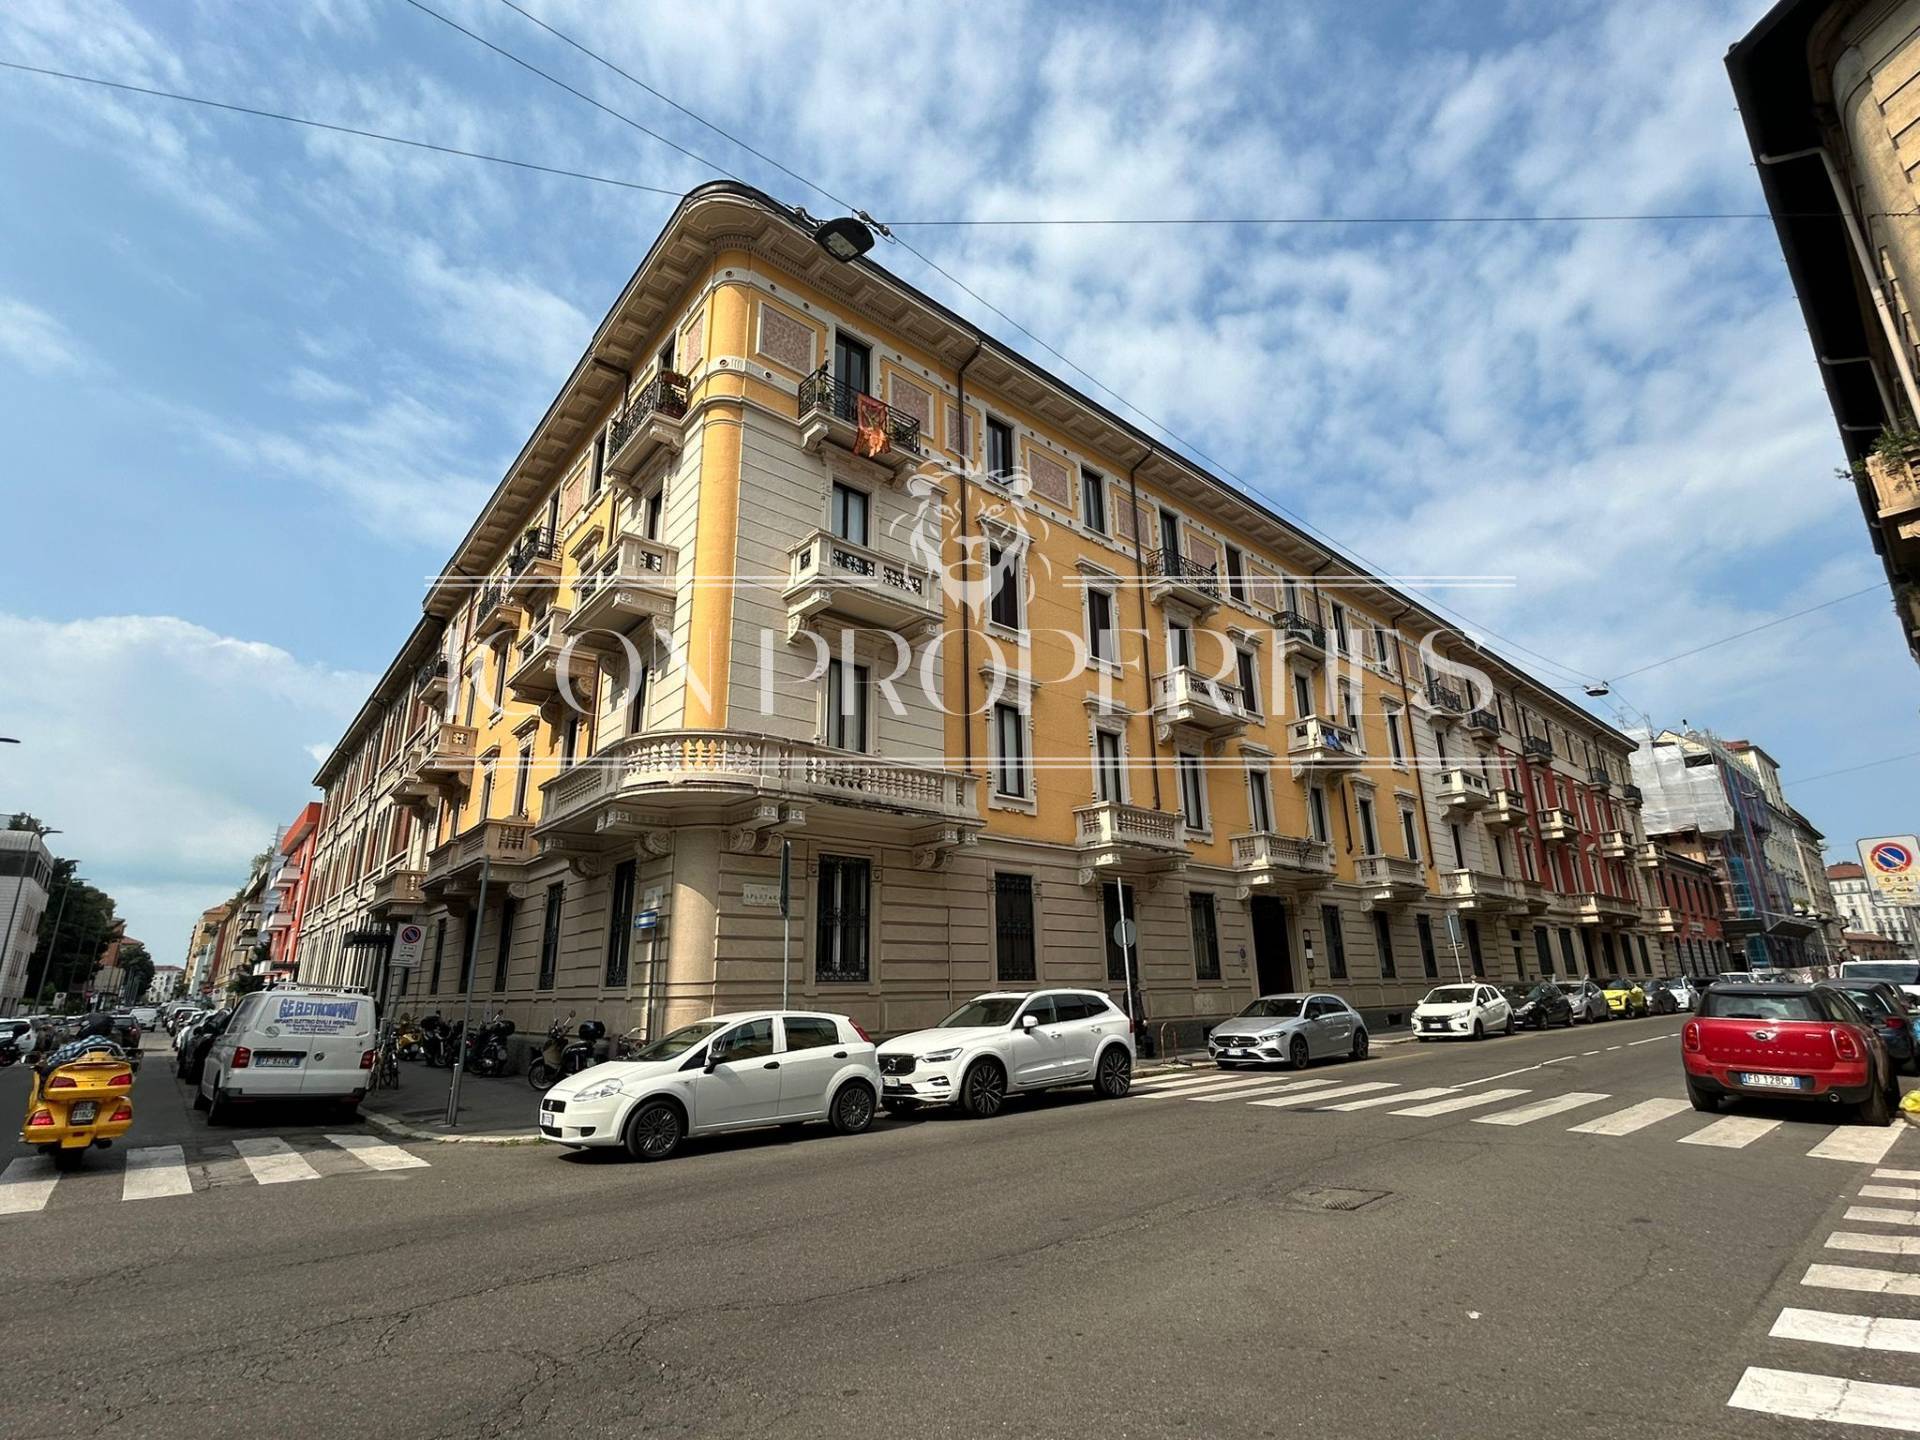 Appartamento arredato in affitto, Milano p.ta romana